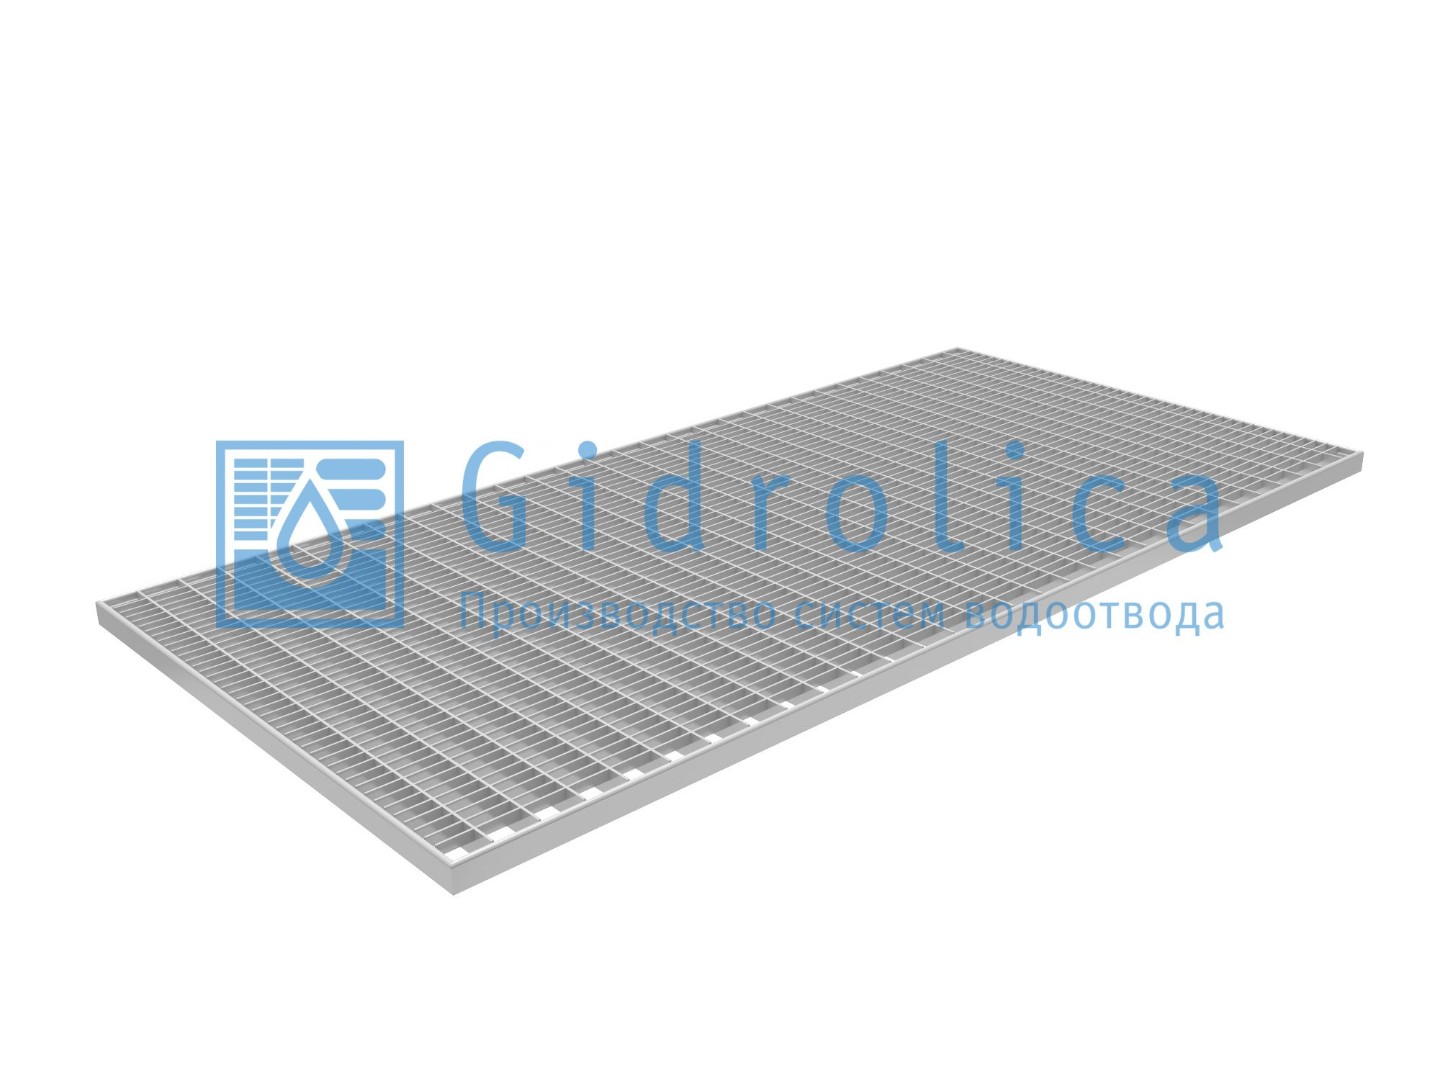 Решетка Gidrolica Step Pro 490х990мм - стальная ячеистая оцинкованная, арт. 302